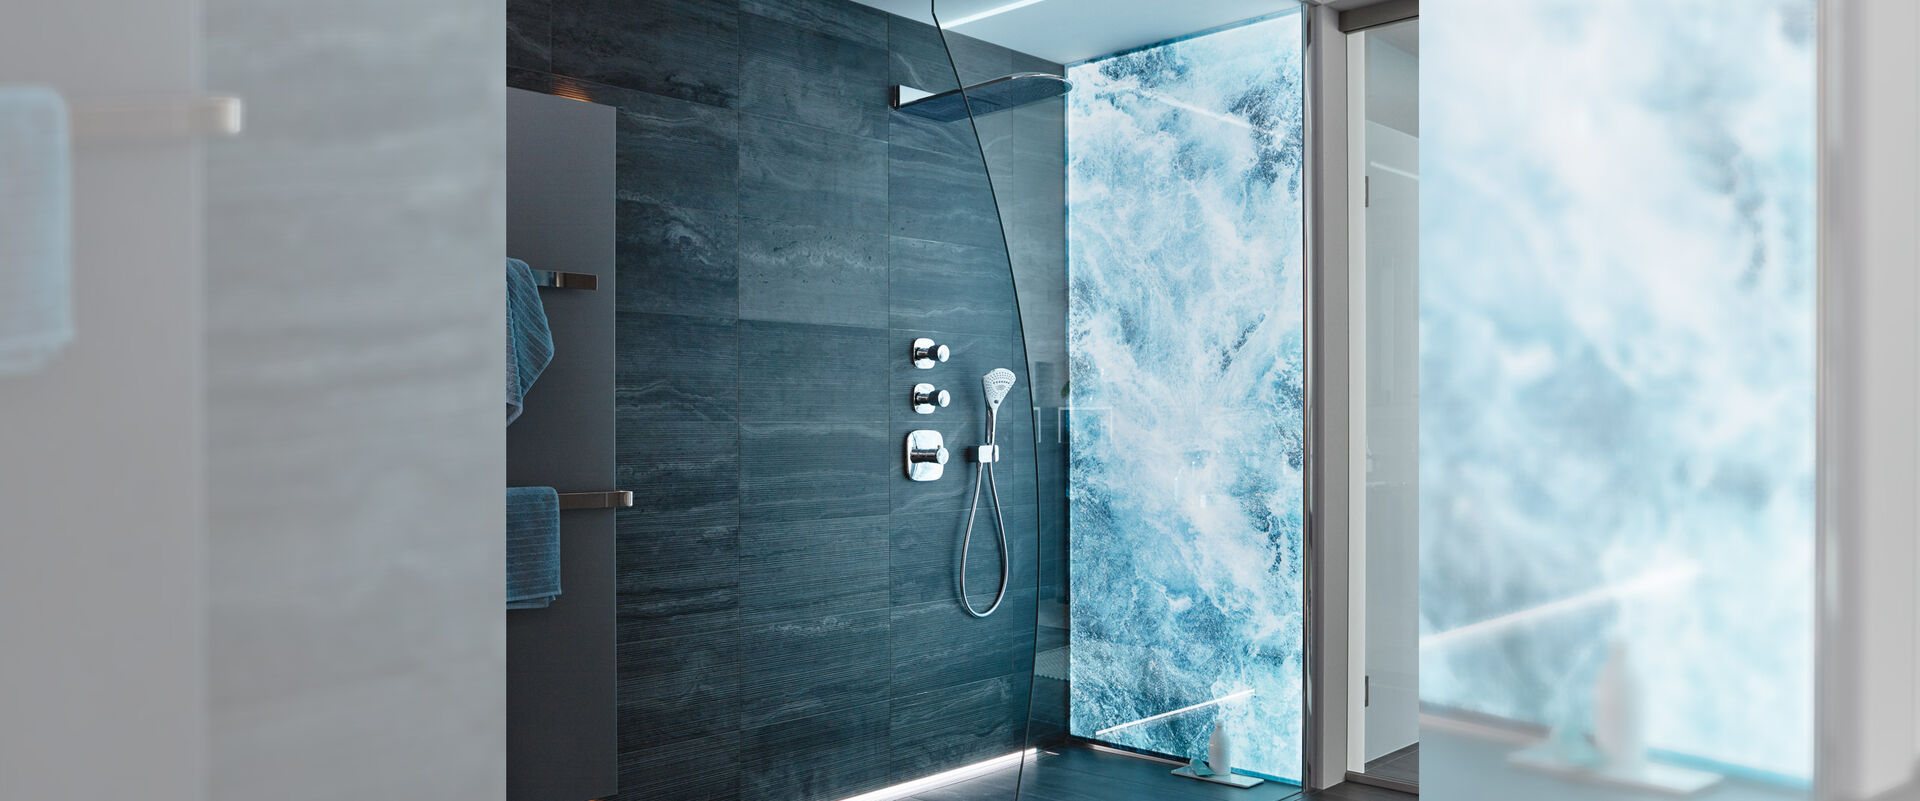 Duschkabine mit einer Spritz Premium LED Wandverkleidung, auf der sprudelndes Wasser abgebildet ist. Die restliche Dusche ist graublau gefliest.